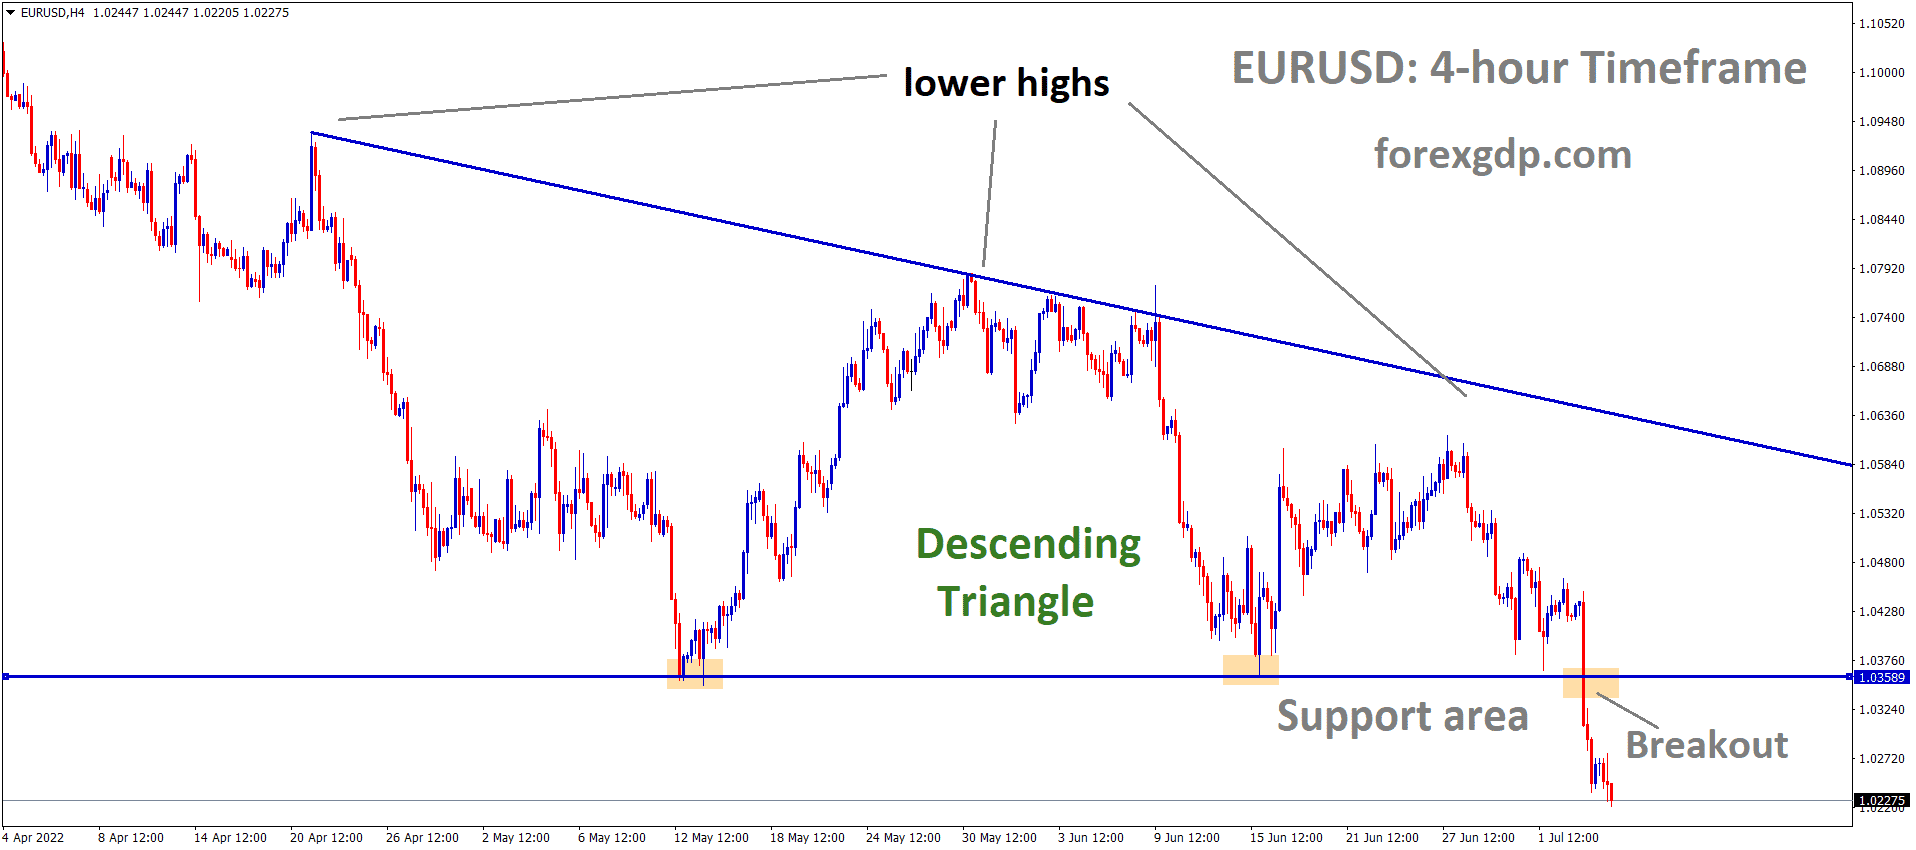 EURUSD has broken the Descending triangle pattern in Downside 1